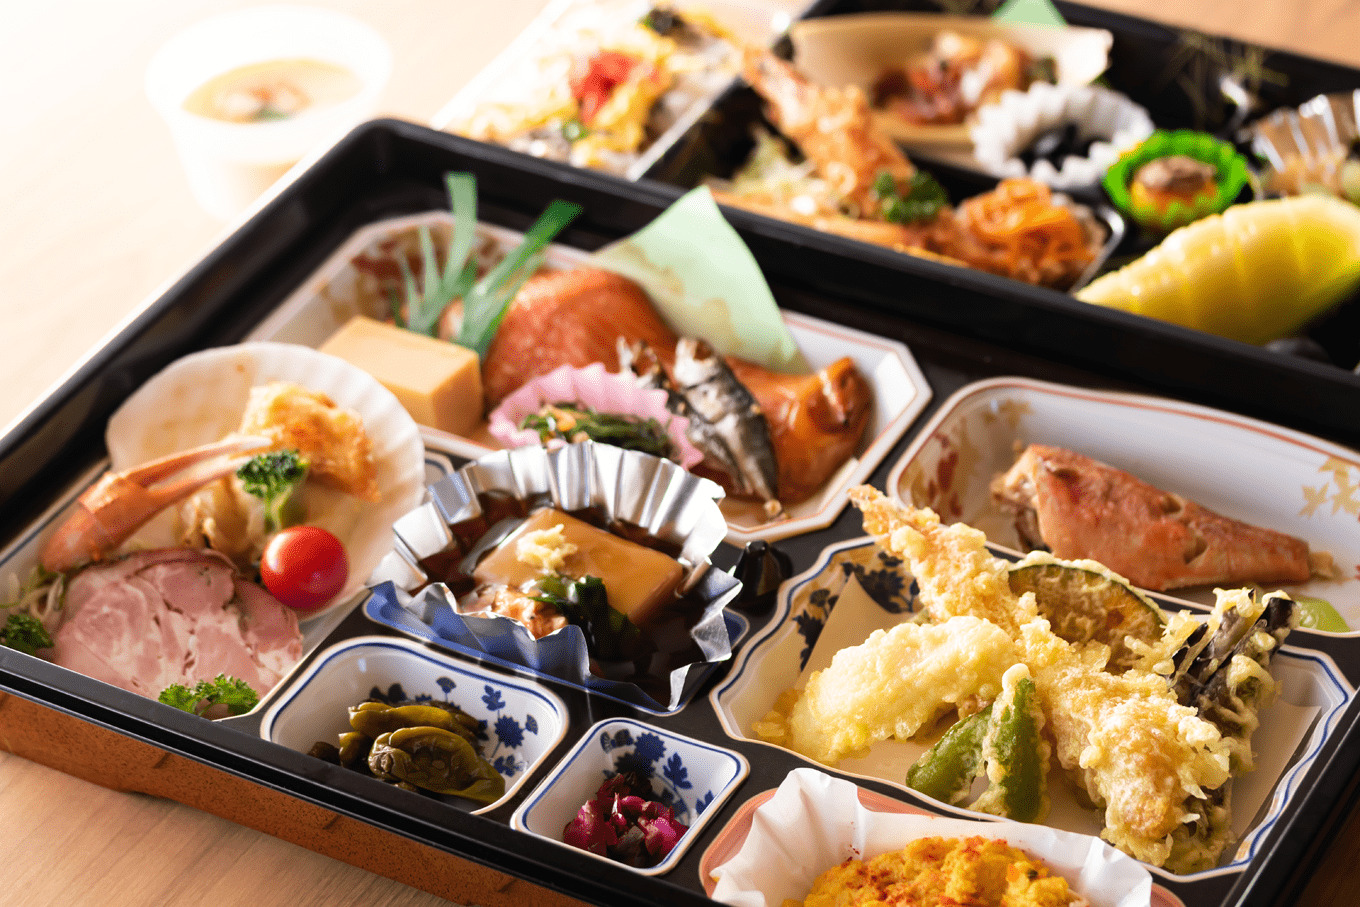 お弁当の容器の中に小皿がたくさんあり、焼き魚や天ぷら、漬物など多くの料理が盛りつけされている。